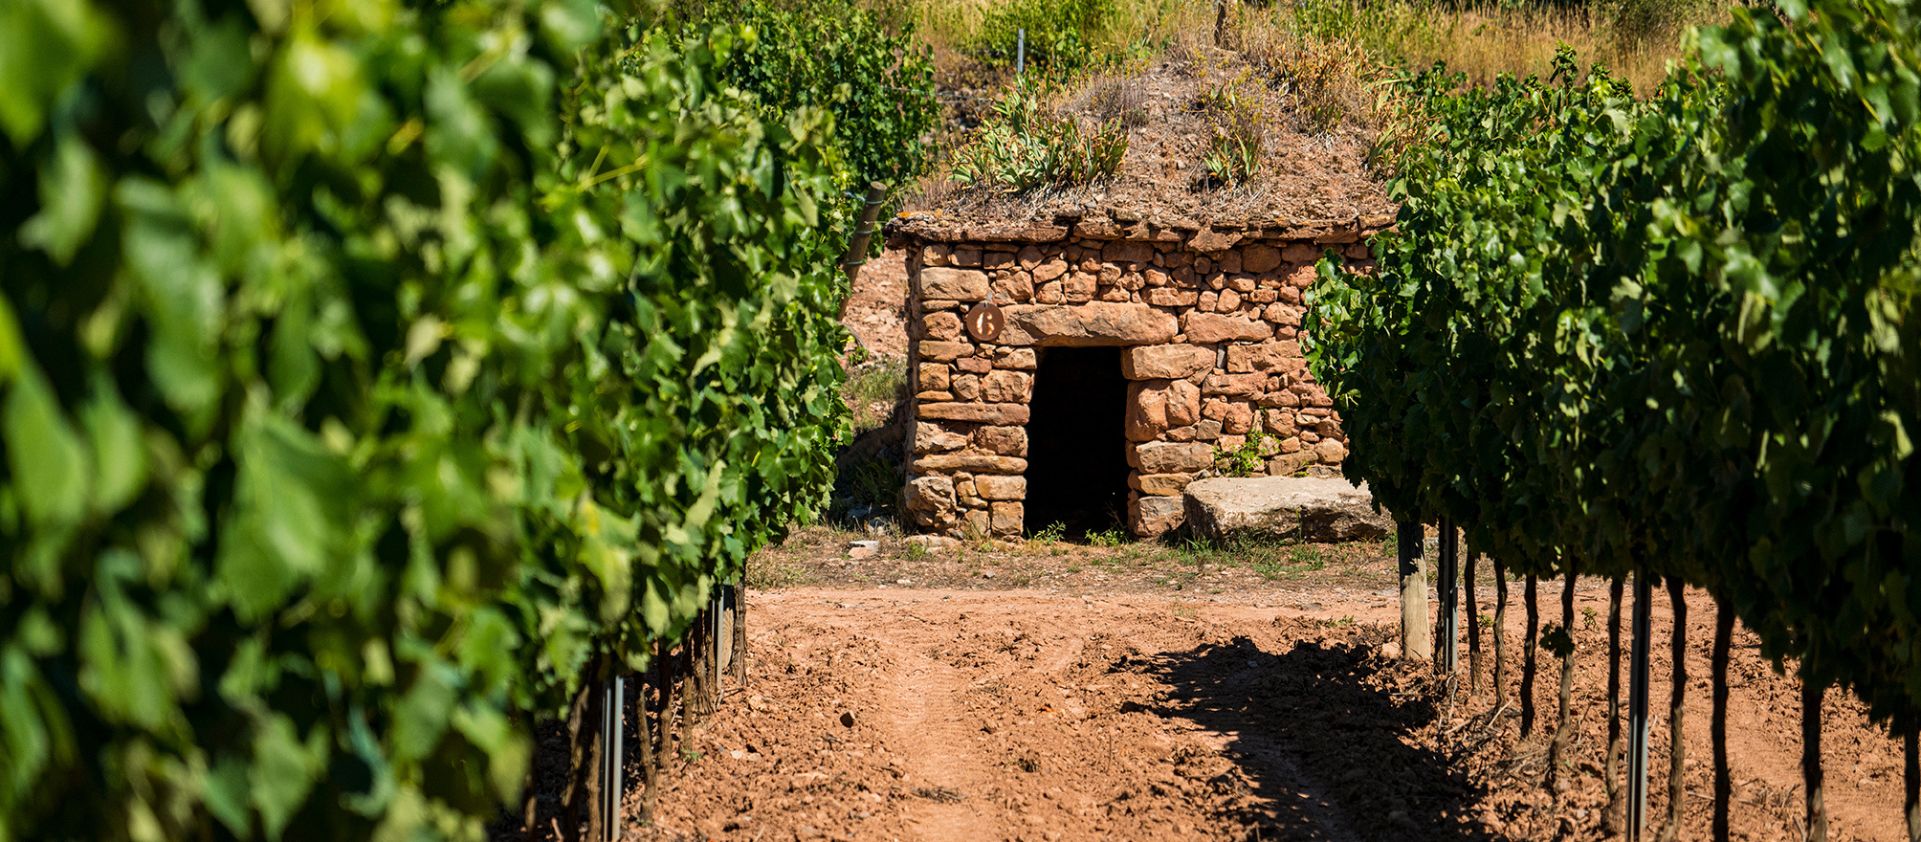 Explora lo mejor de los vinos ecológicos. Calidad y conciencia ambiental por menos de 10€